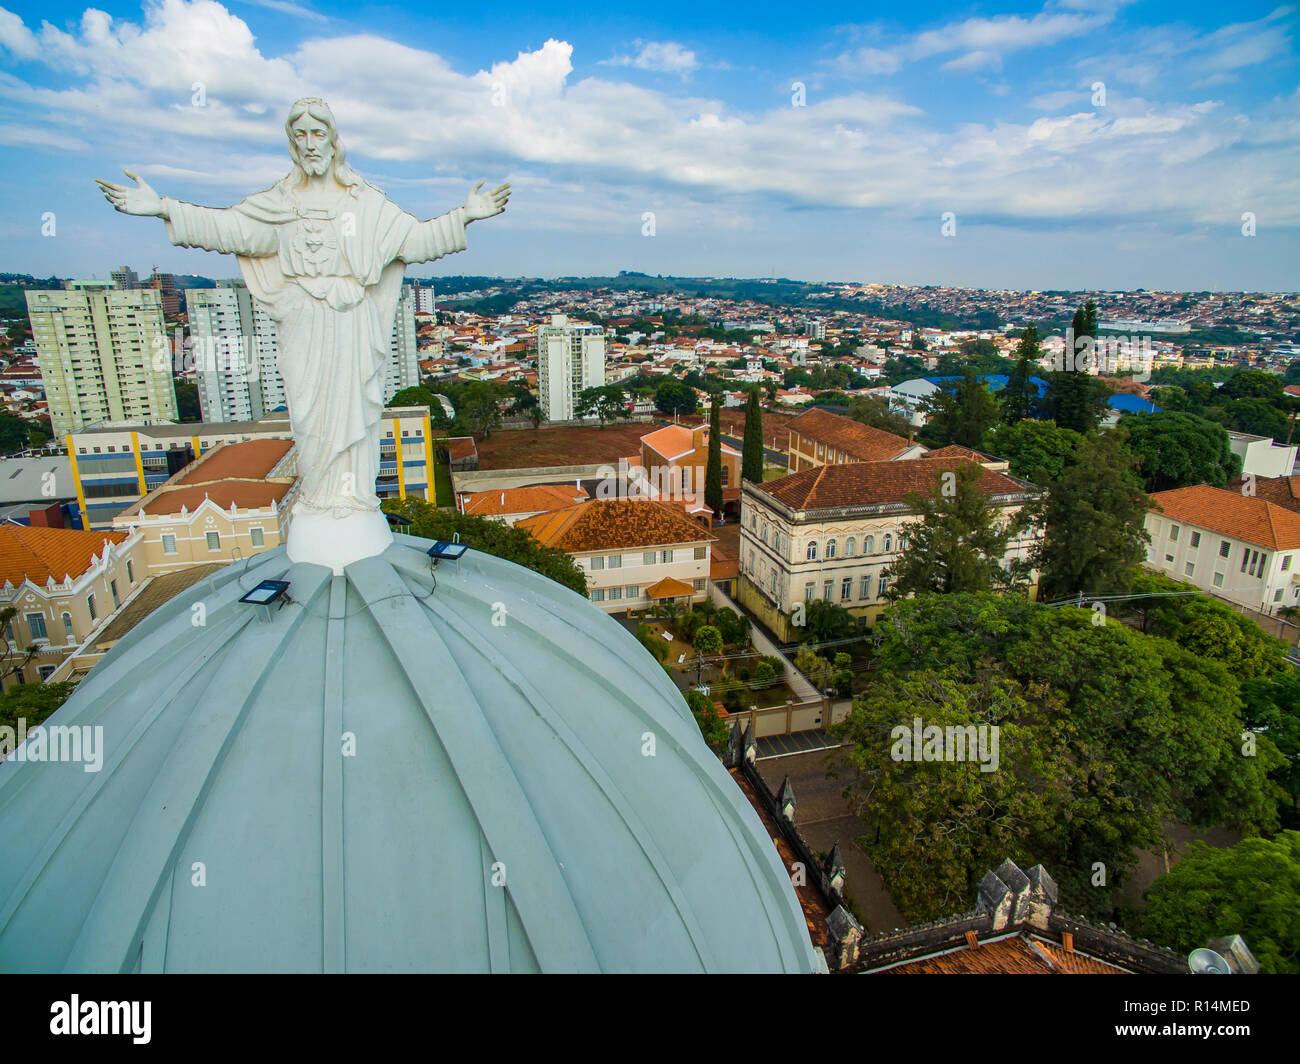 Statue von Jesus Christus an der Spitze der katholischen Kirche, die  Kathedrale Sant'Ana, Stadt von Botucatu, Sao Paulo, Brasilien Südamerika  Stockfotografie - Alamy